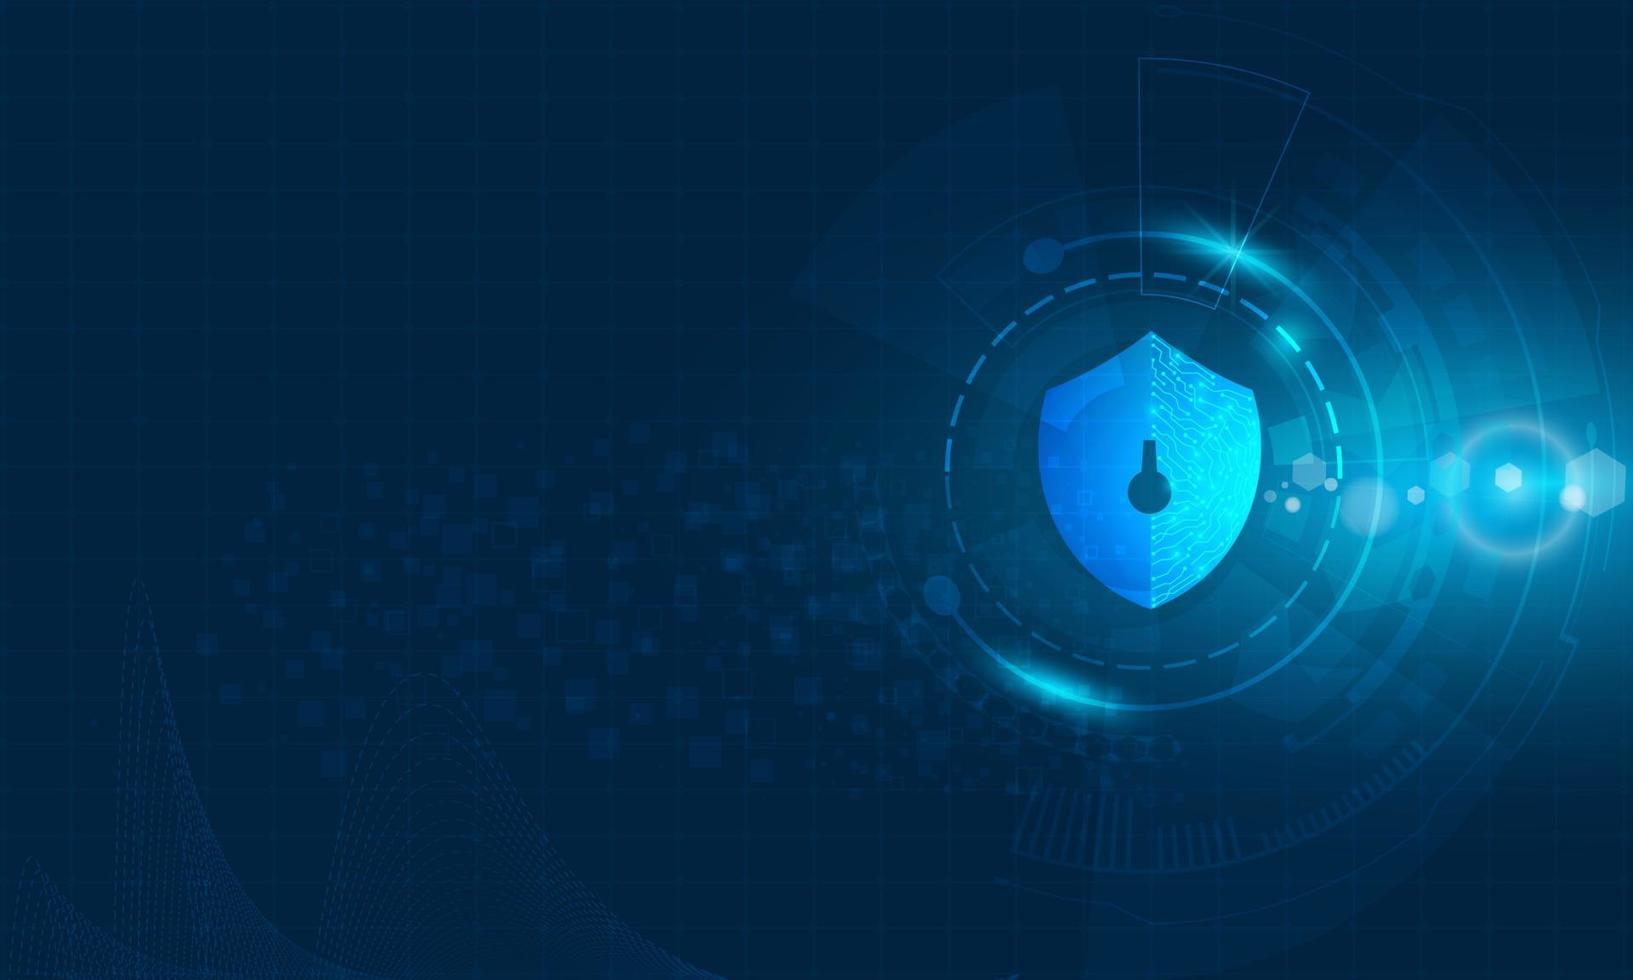 protección de datos personales de seguridad cibernética con vector de candado.concepto de fondo futurista de alta tecnología abstracto.